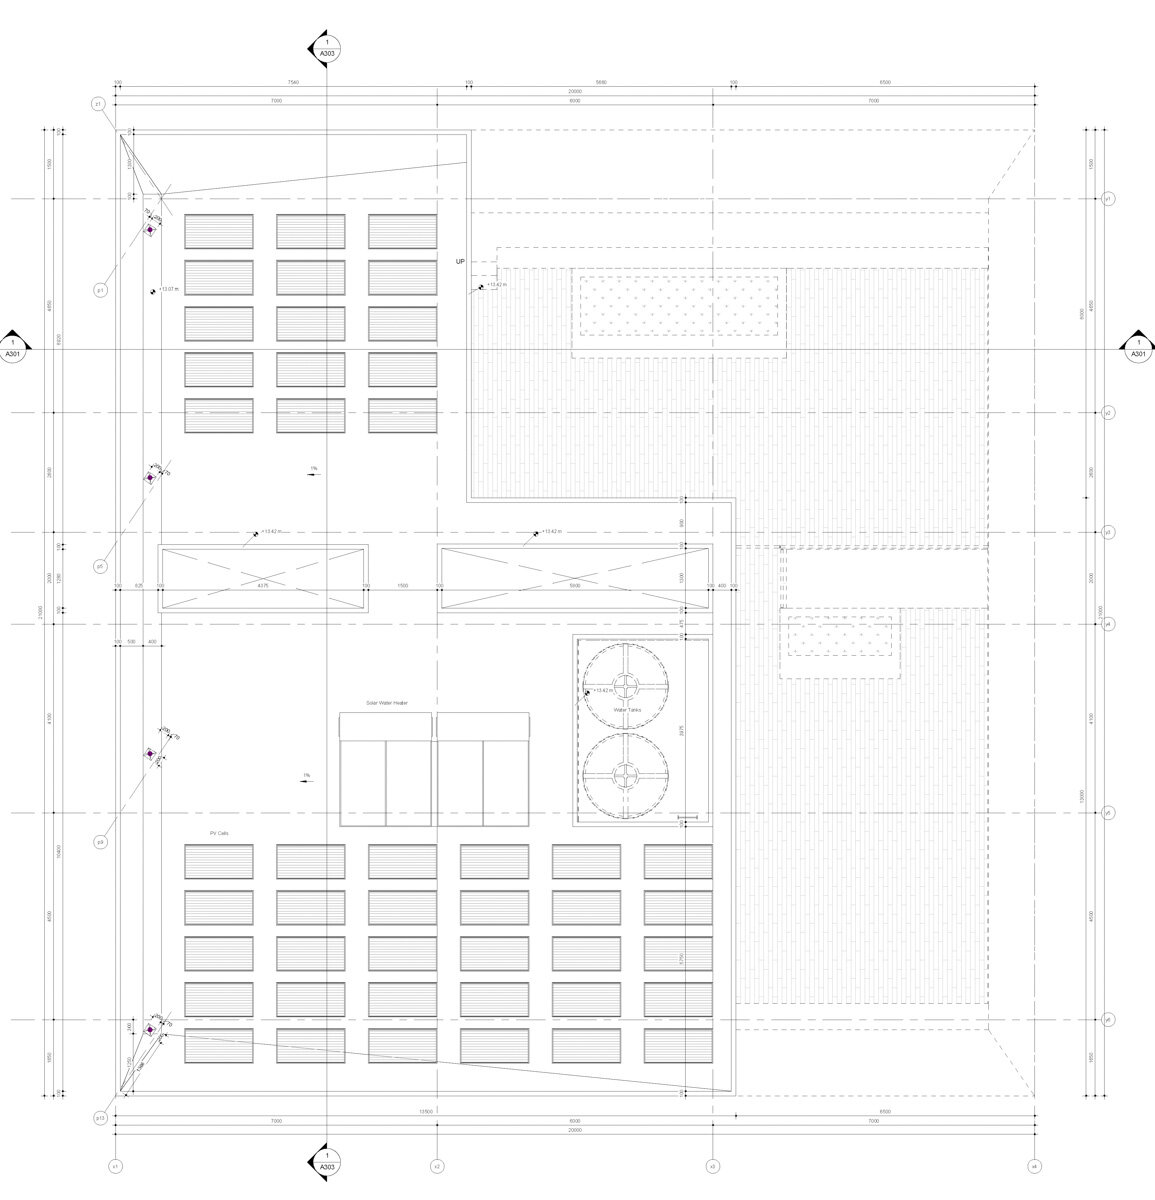 2019-01-28_LWSP_Tender_Architectural Drawings_Page_10_1200.jpg